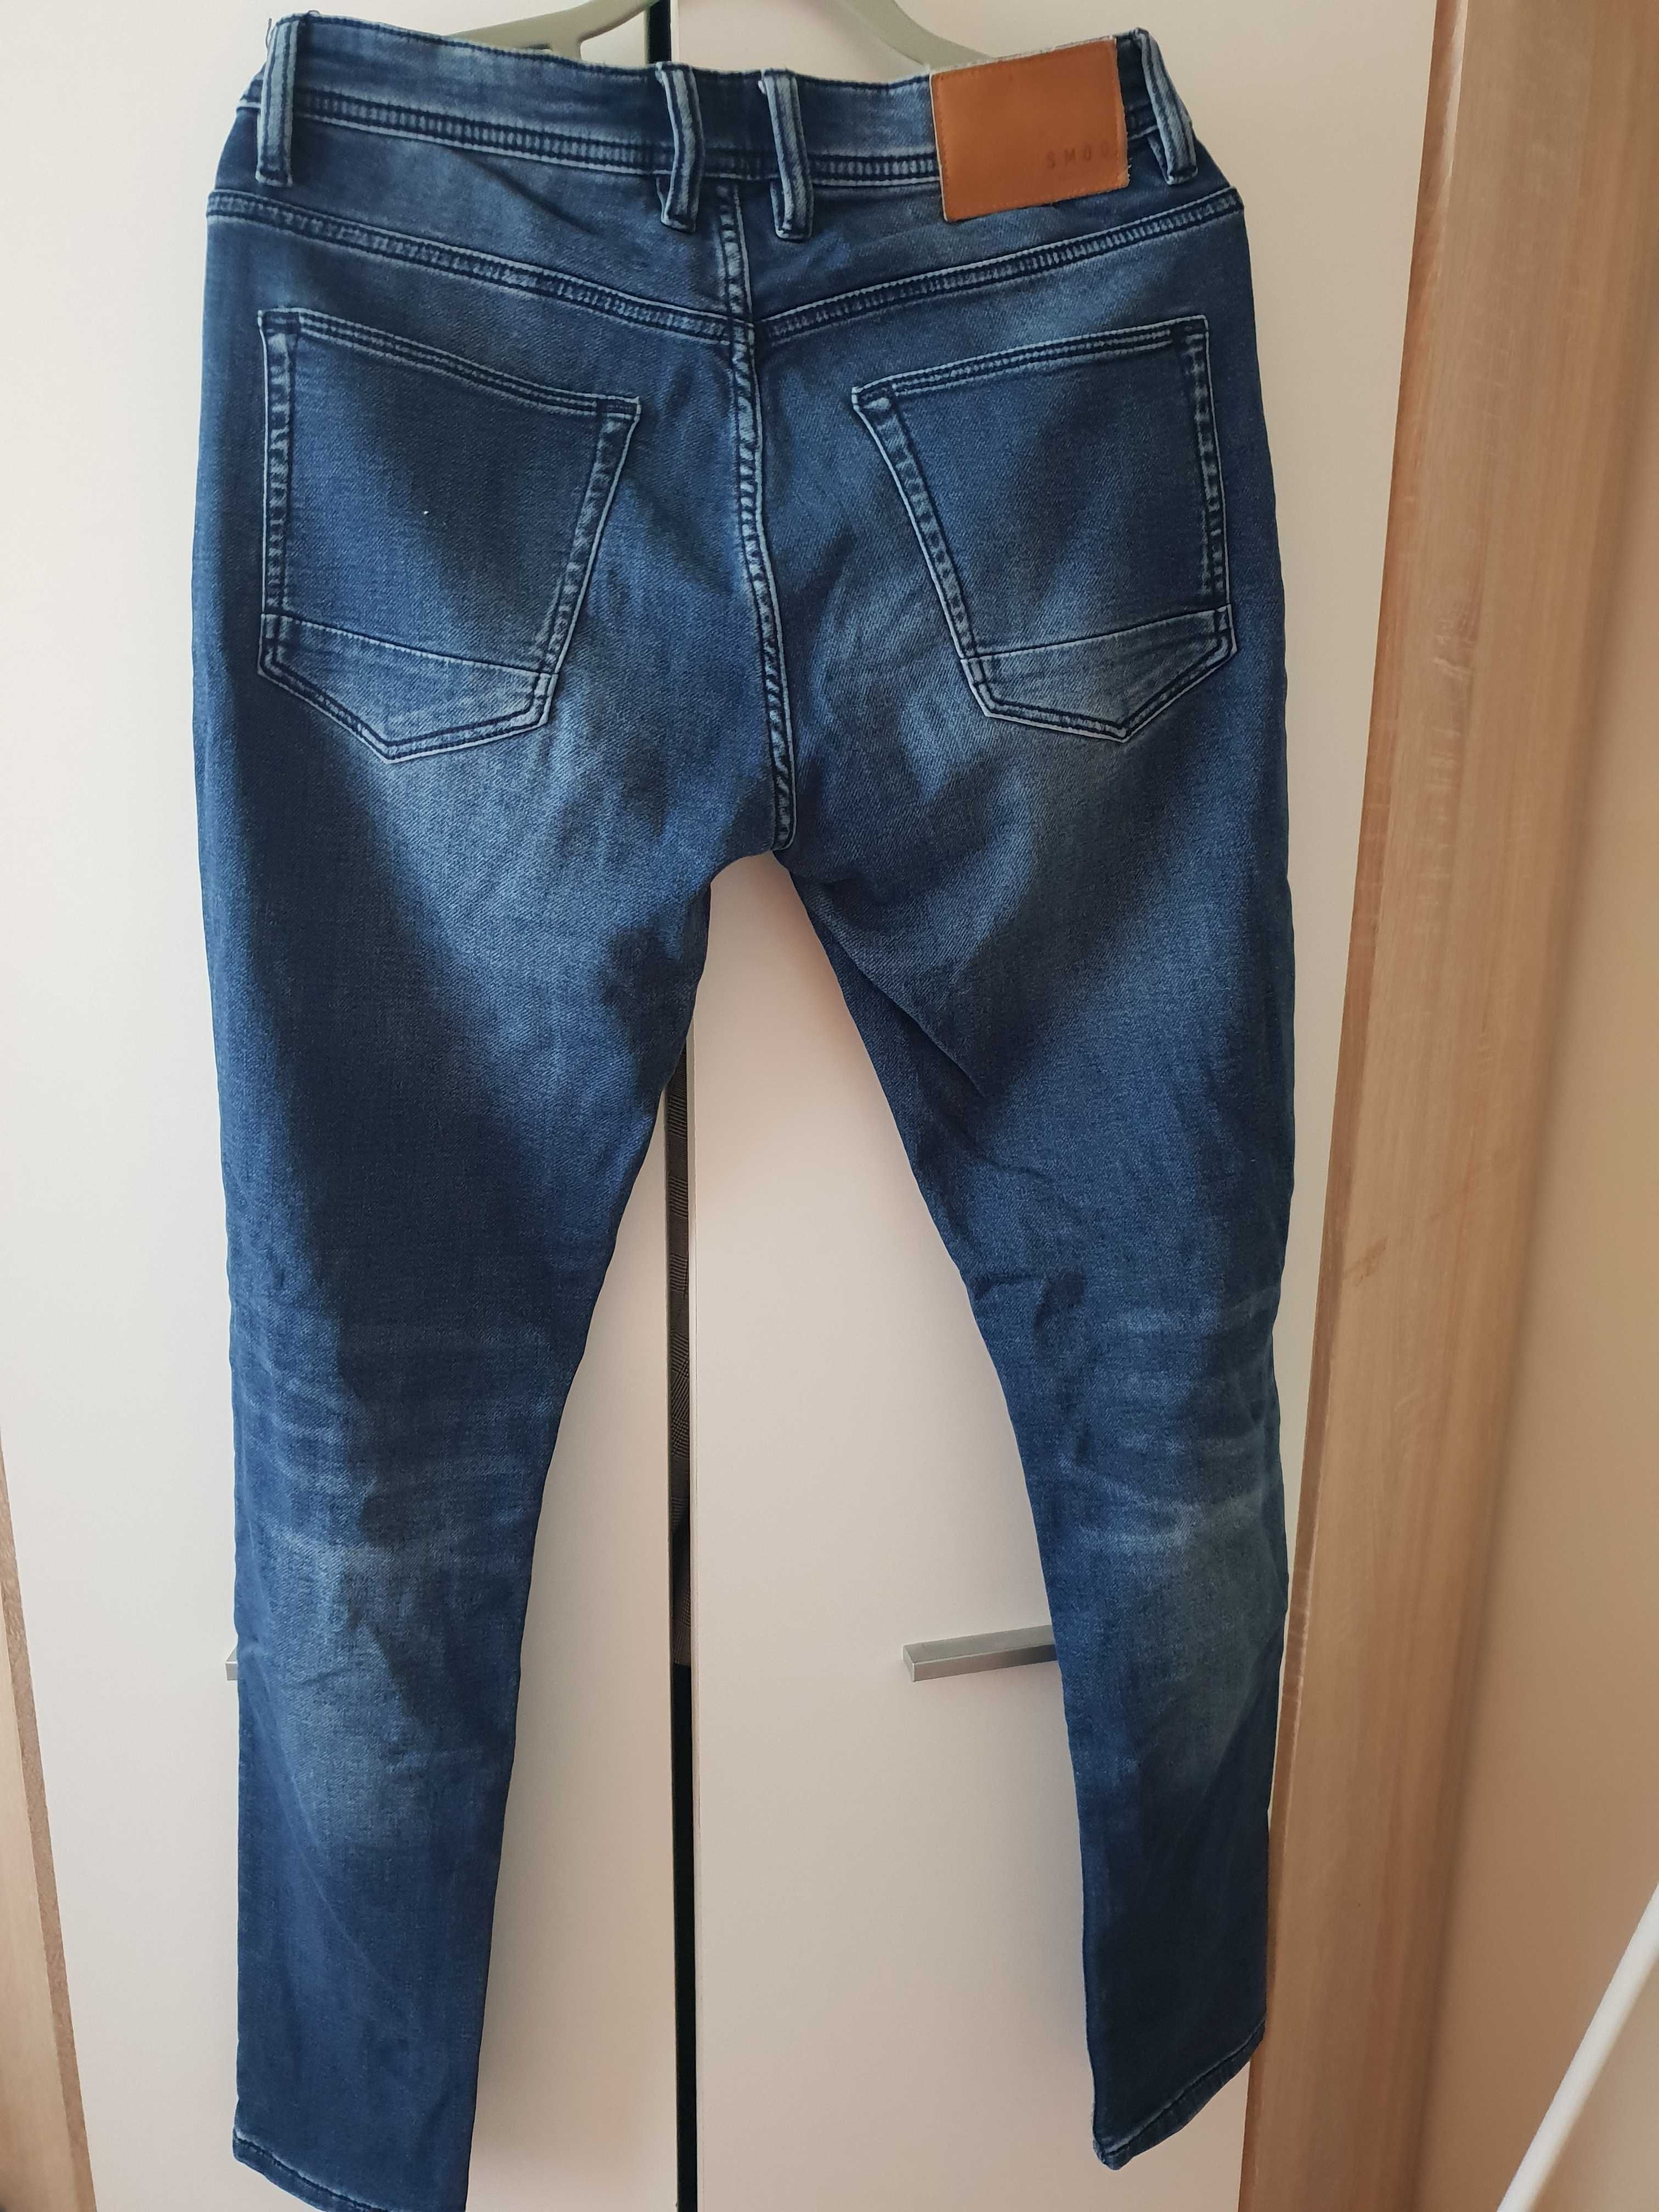 Spodnie męskie jeansy spodnie jeansowe